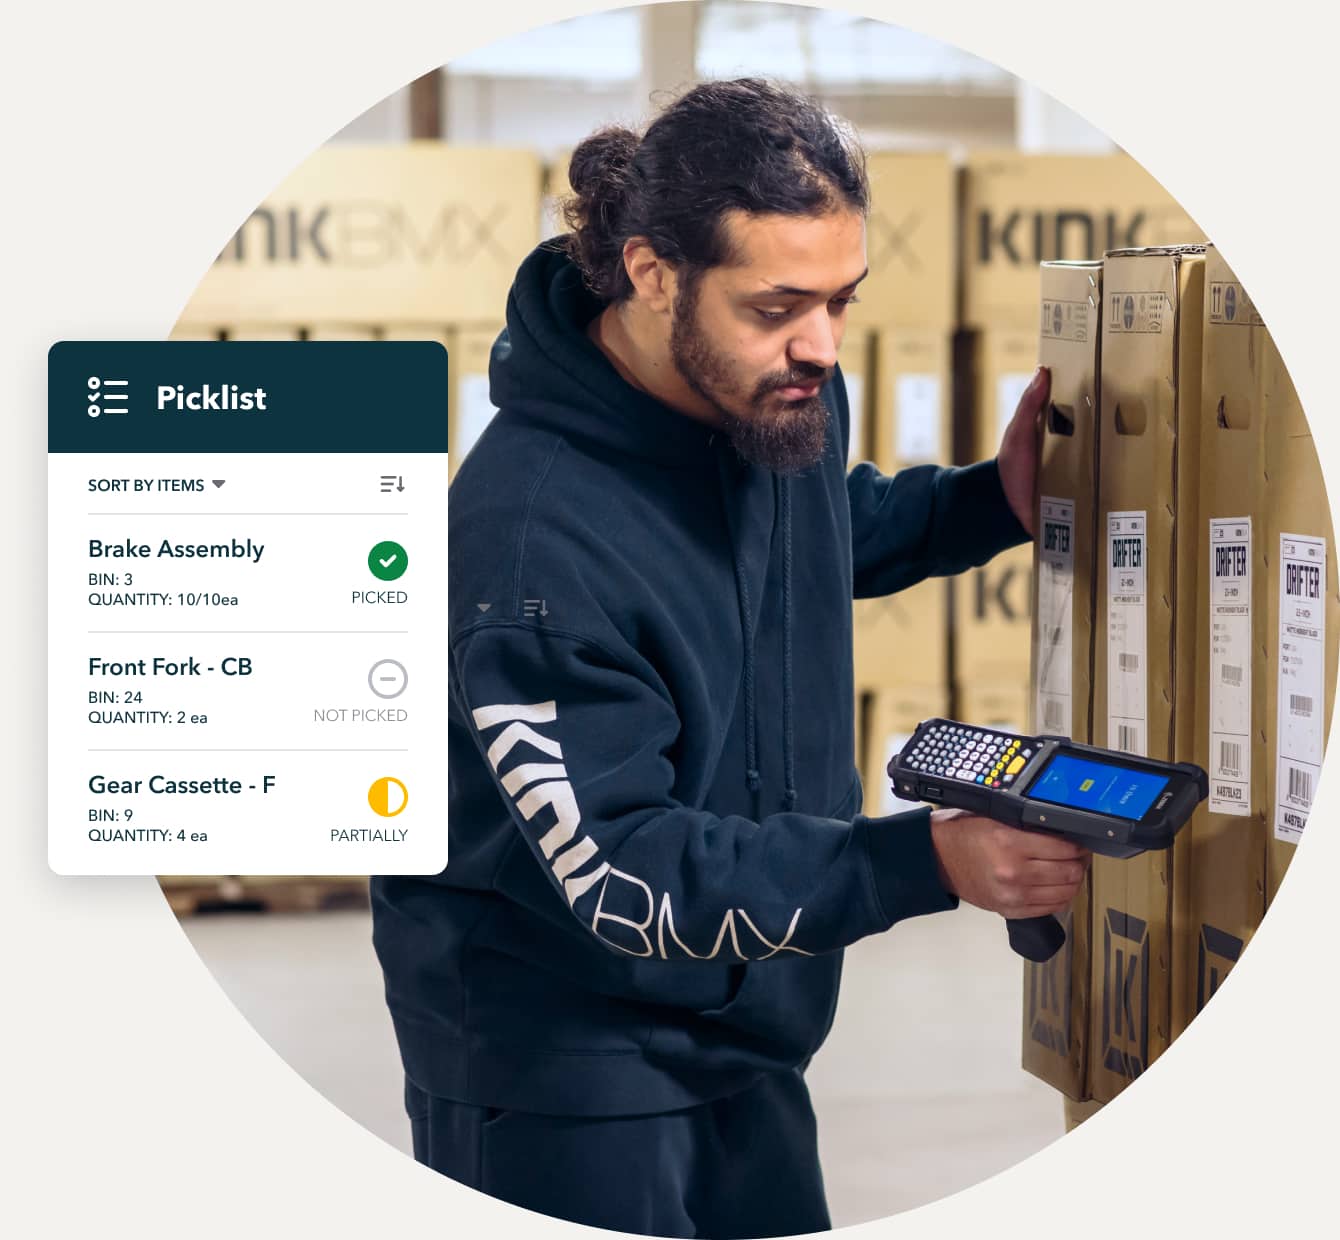 QuickBooks Enterprise customer KinkBMX employee scanning product barcode